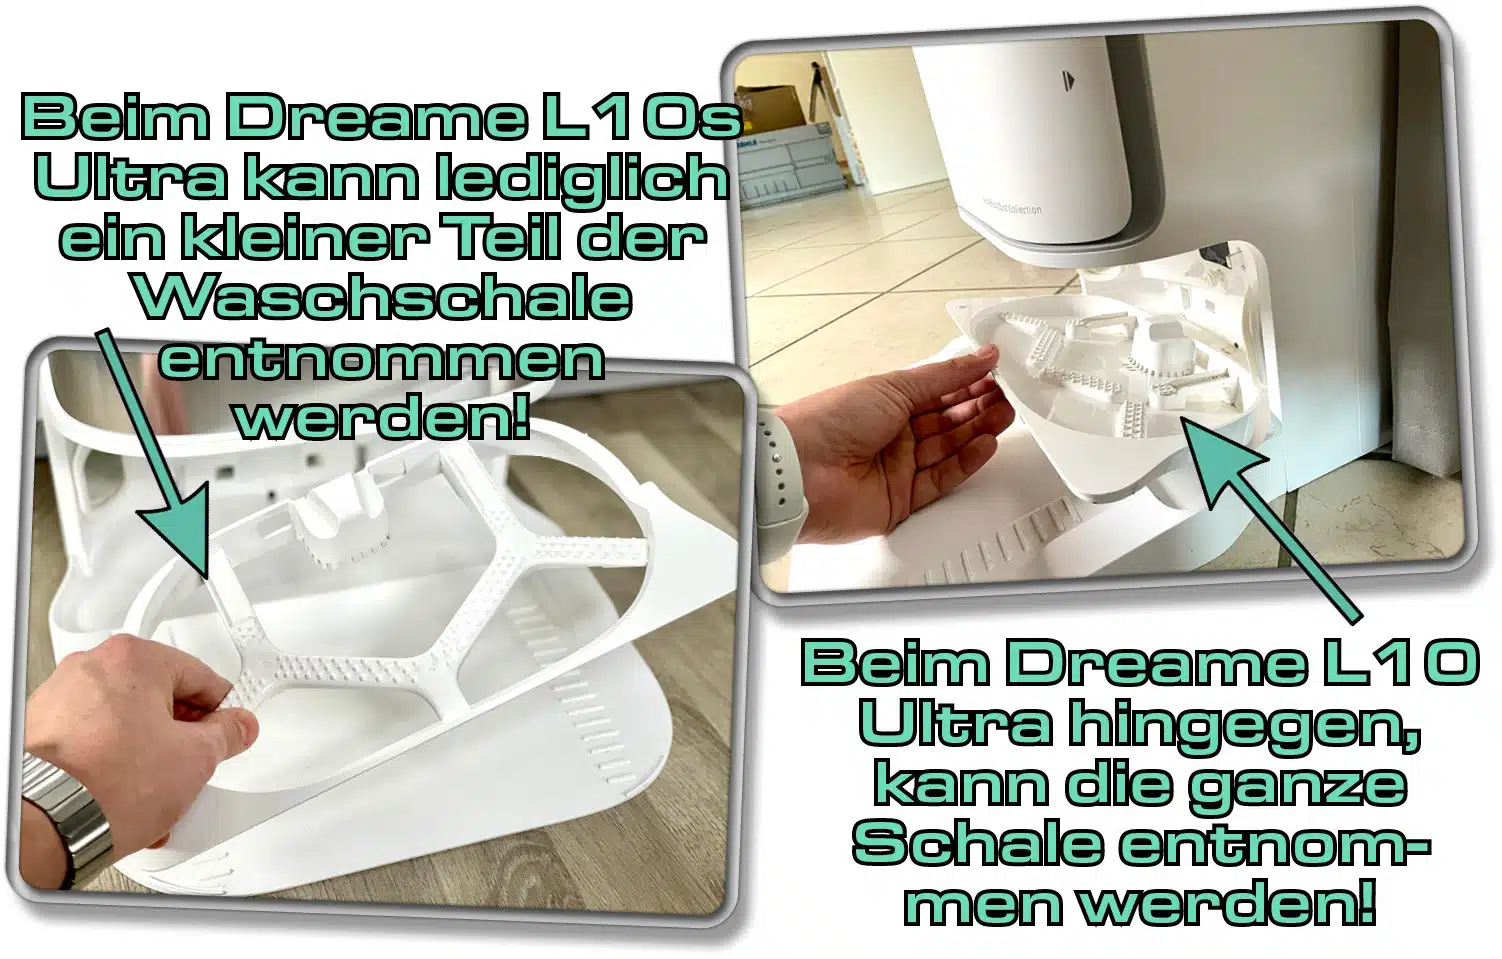 Dreame L10s Ultra - Lediglich ein kleiner Teil der Waschschale kann für die manuelle Reinigung entnommen werden. Beim Dreame L10 Ultra kann man die ganze Schale entnehmen.